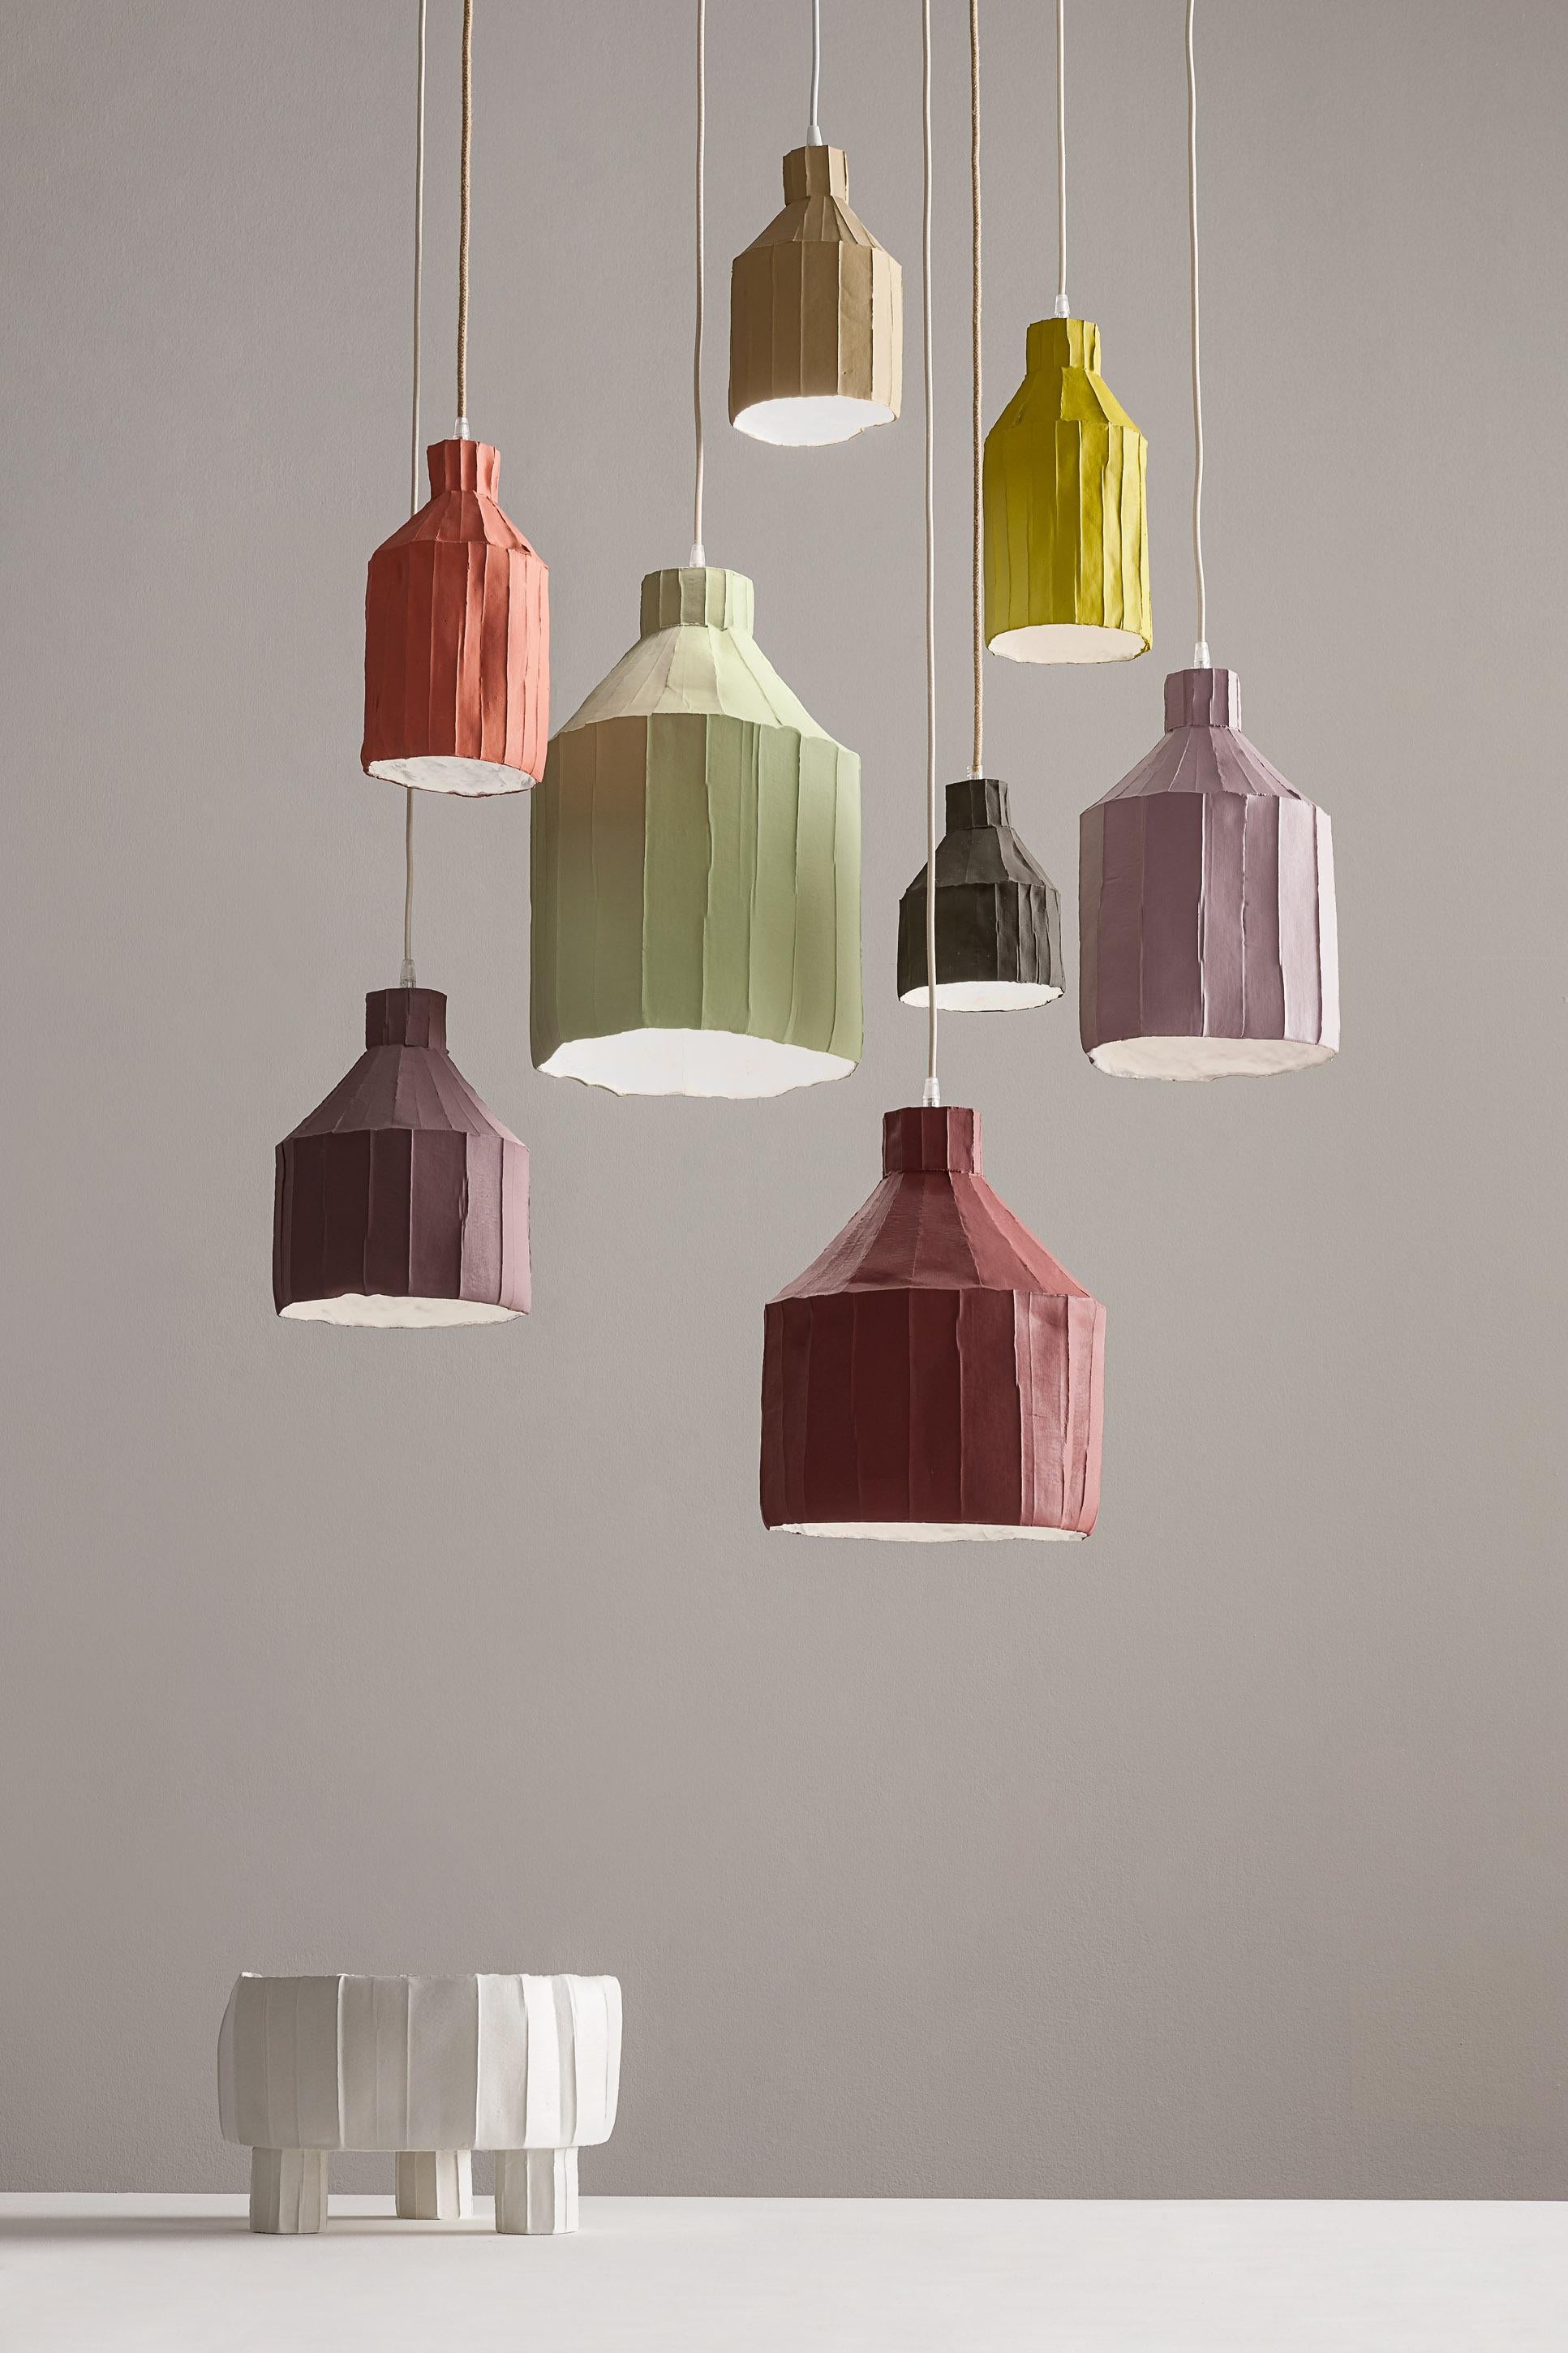 Diese raffinierte Lampe ist ein Beweis für das innovative Design und die hervorragende Handwerkskunst von Paola Paronettos Papier-Ton-Kunstwerken.  Dieses vollständig von Hand gefertigte Stück wird mit Paperclay zum Leben erweckt, einer